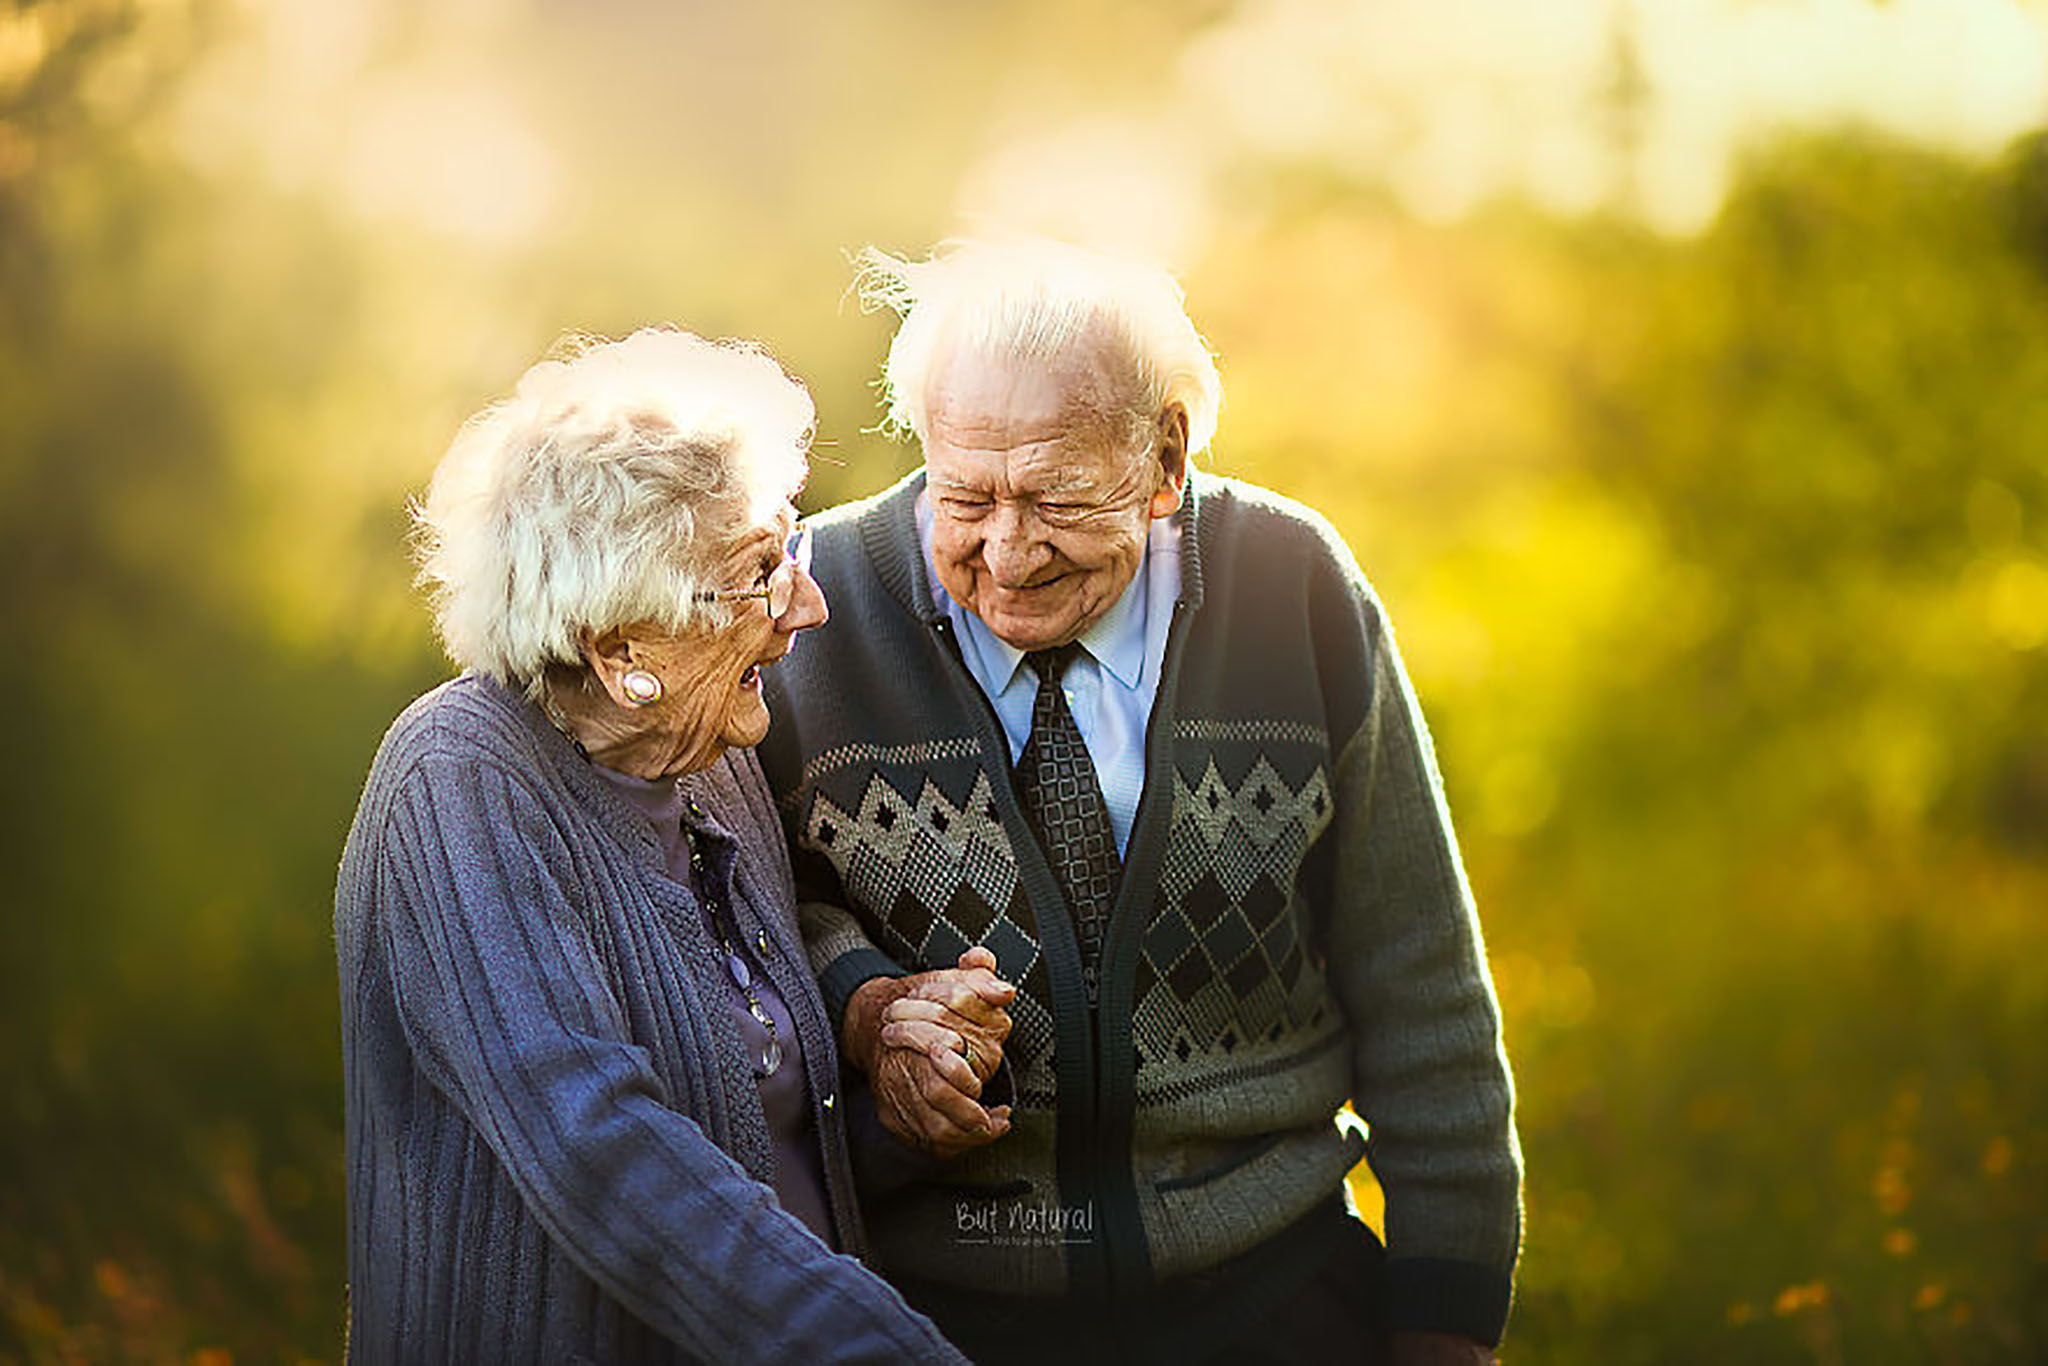 Đôi vợ chồng già này thật đáng ngưỡng mộ! Họ đã cùng nhau trải qua thăng trầm của cuộc đời và vẫn yêu nhau mãi. Bạn sẽ cảm thấy tình yêu của họ như một nguồn động viên và cảm hứng để yêu thương tốt hơn.